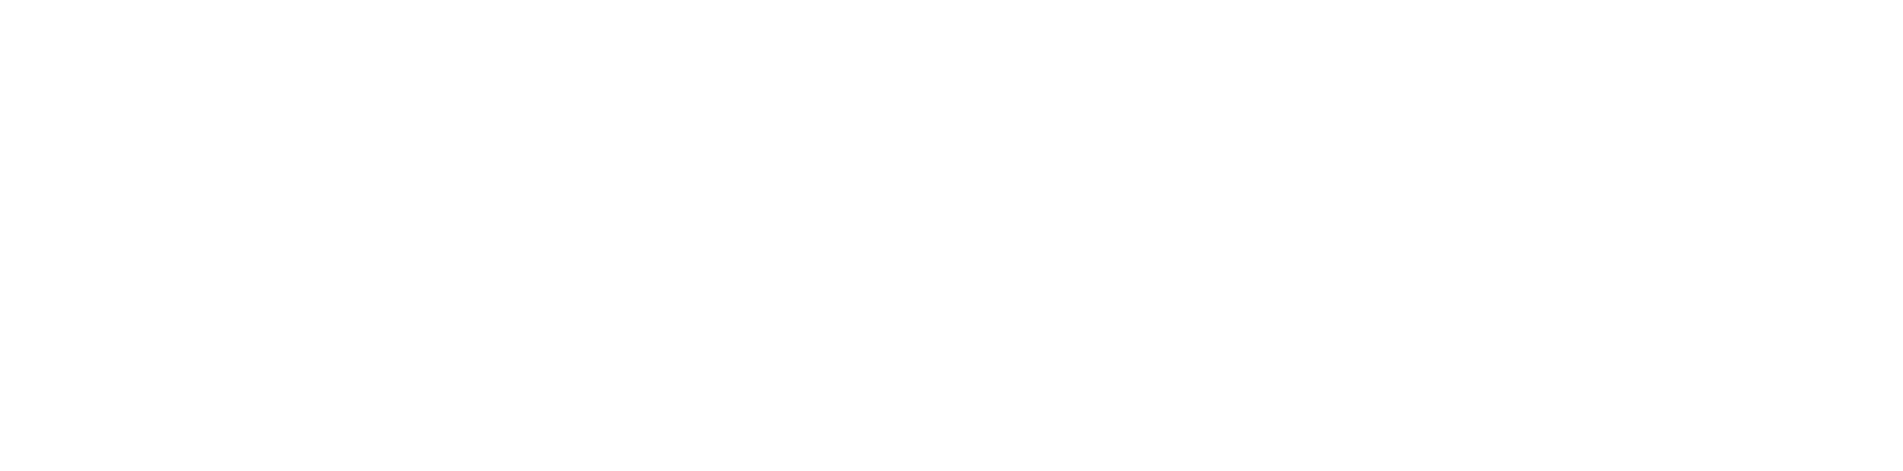 Lingva